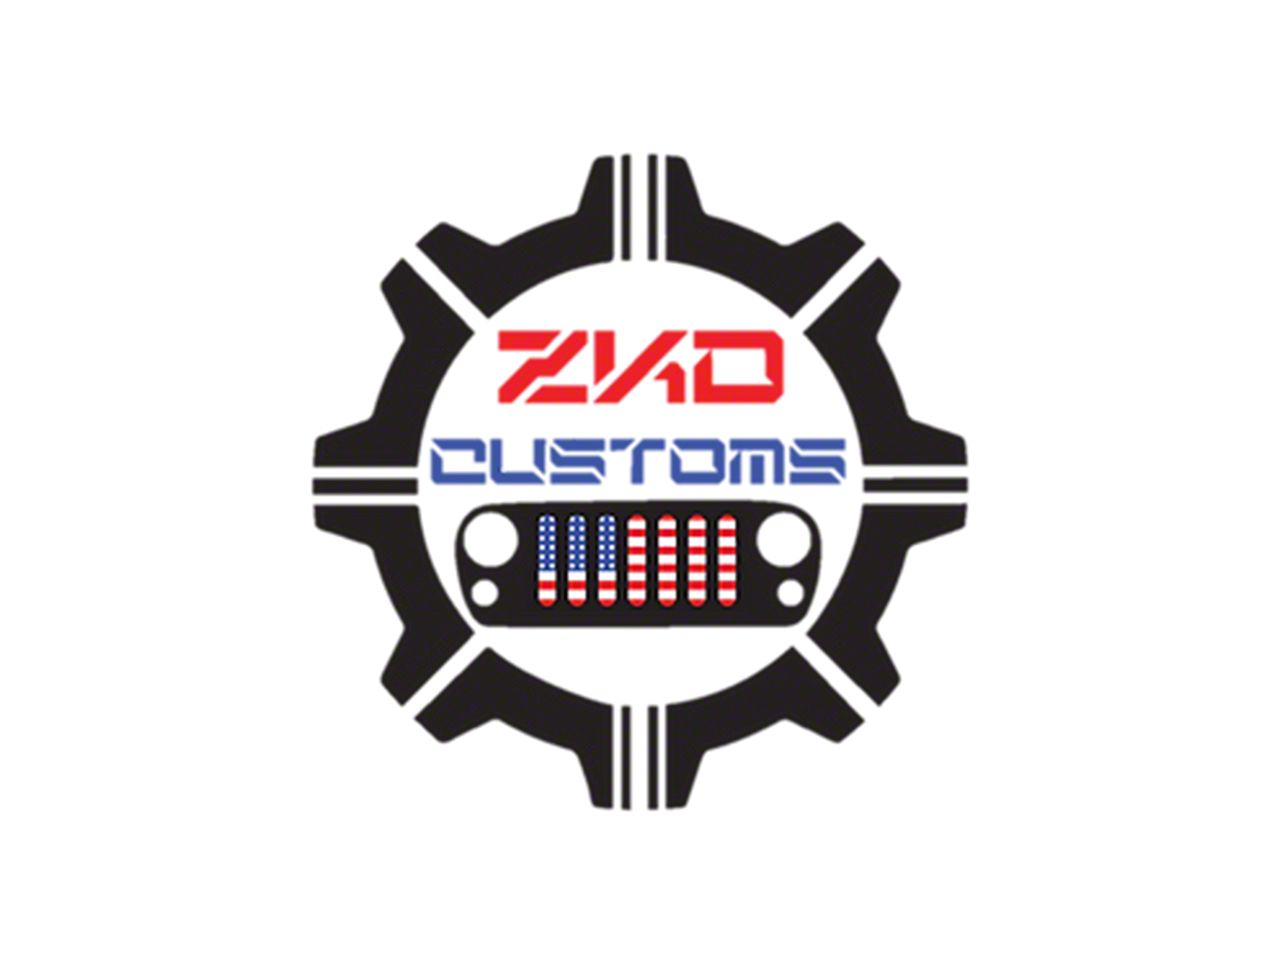 ZKD Customs Parts